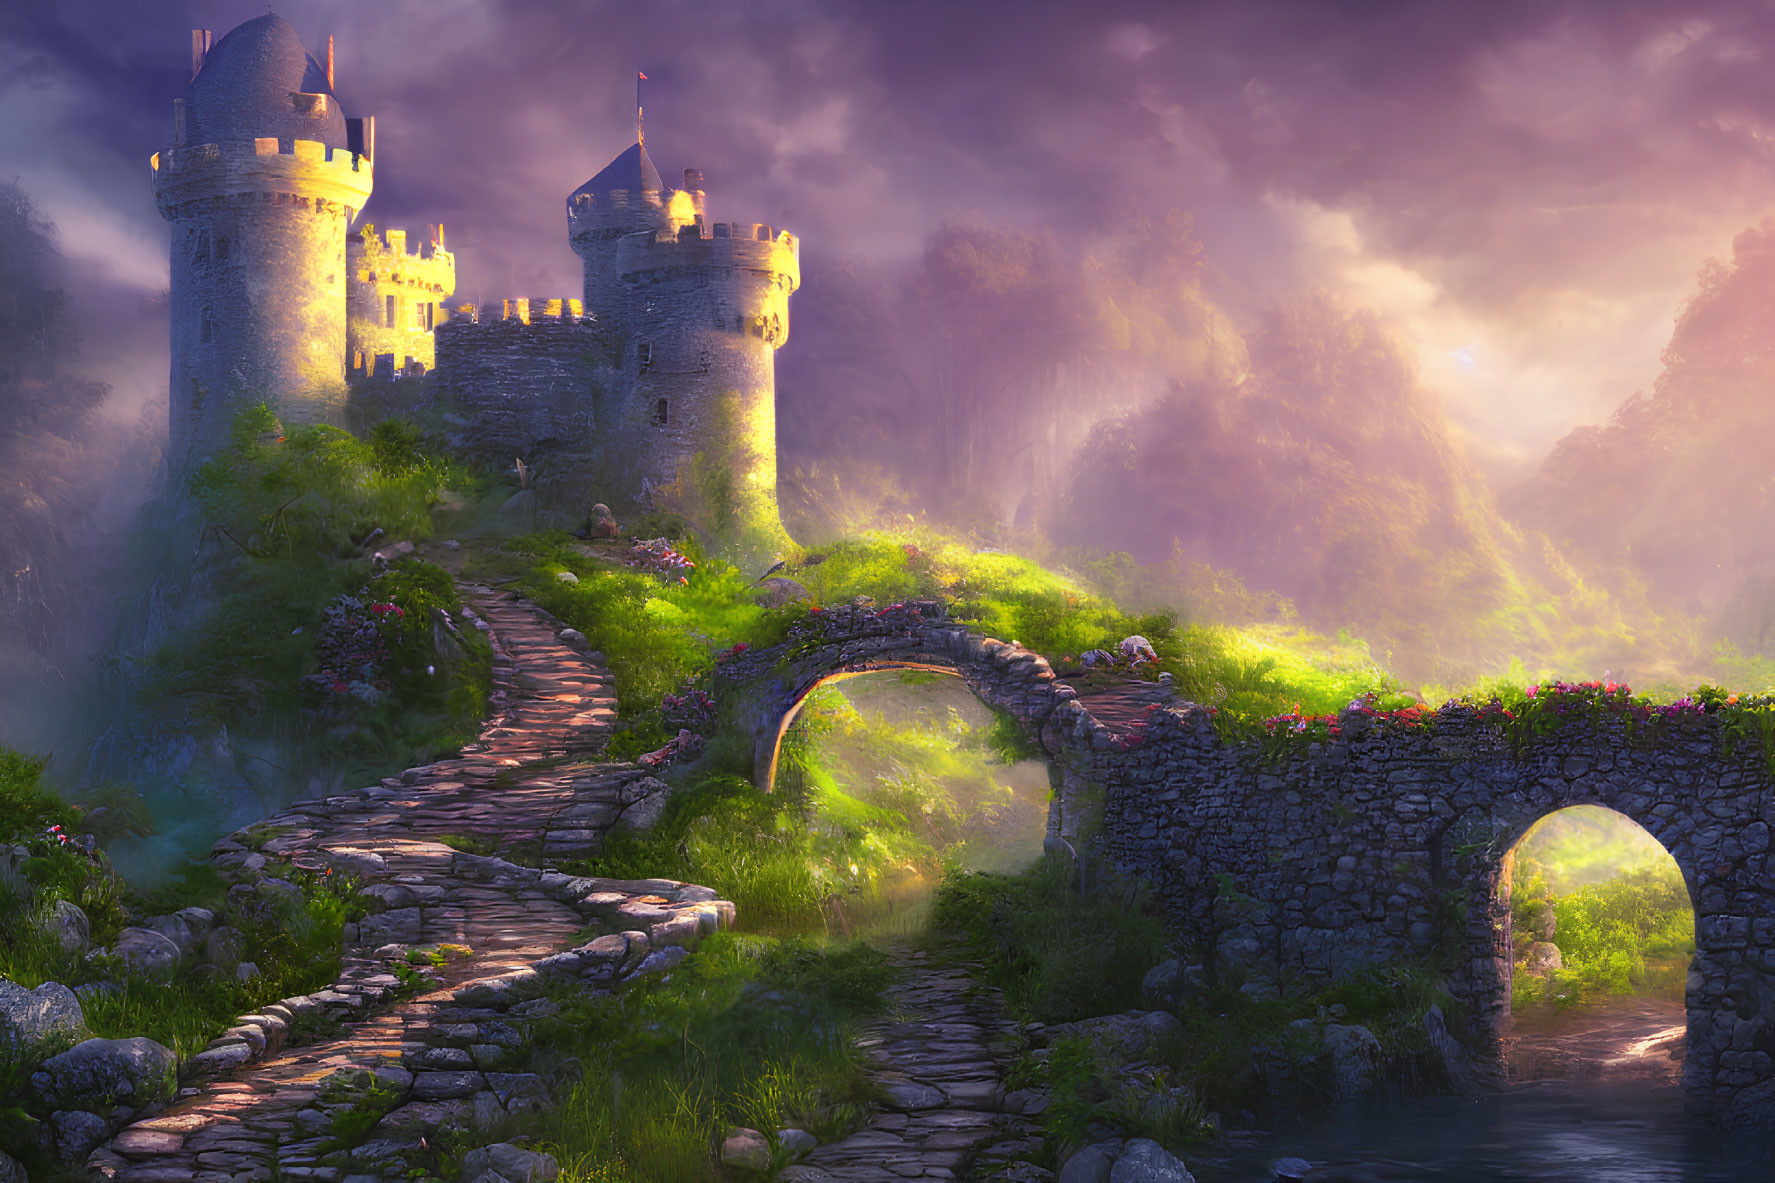 Fantasy castle on lush hill with cobblestone bridge in warm sunlight